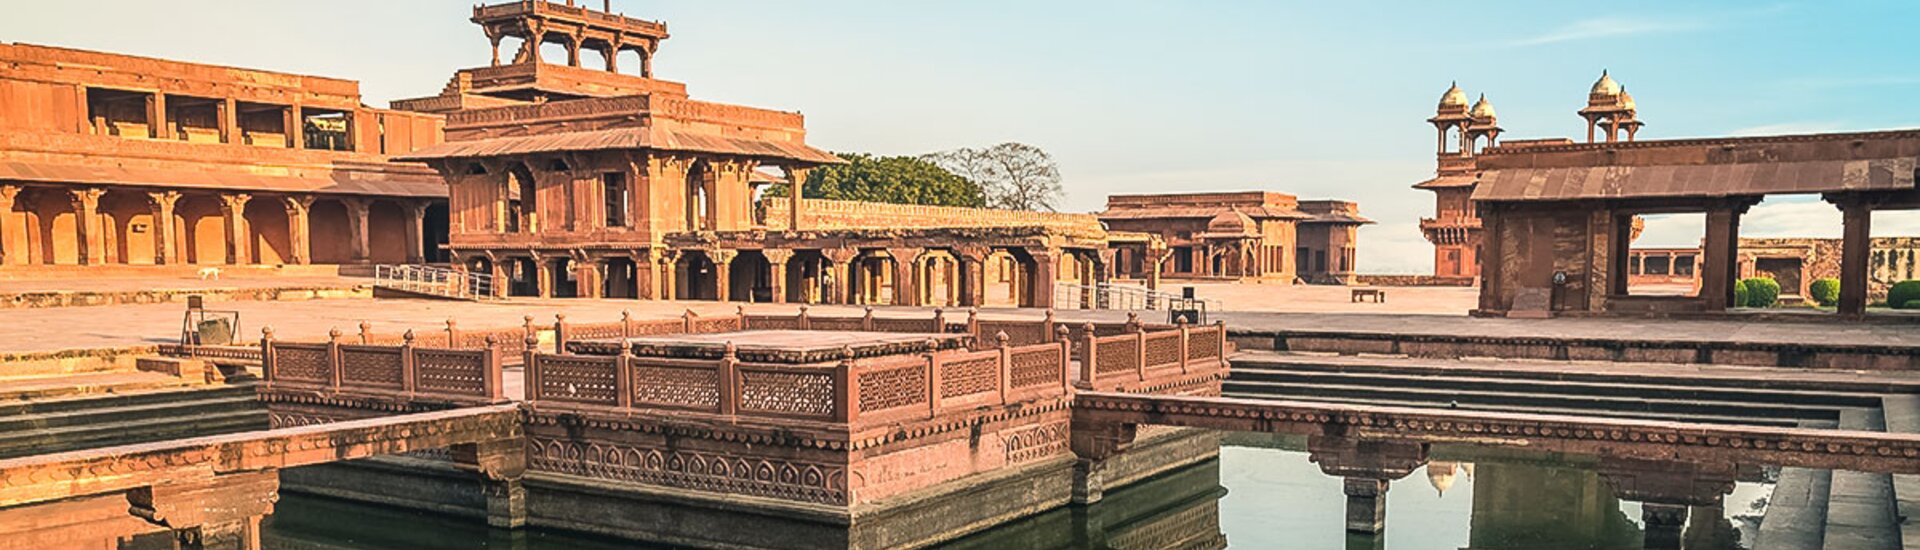 Die Palastanlage von Fatehpur Sikri mit dem Panch Mahal-Tempel